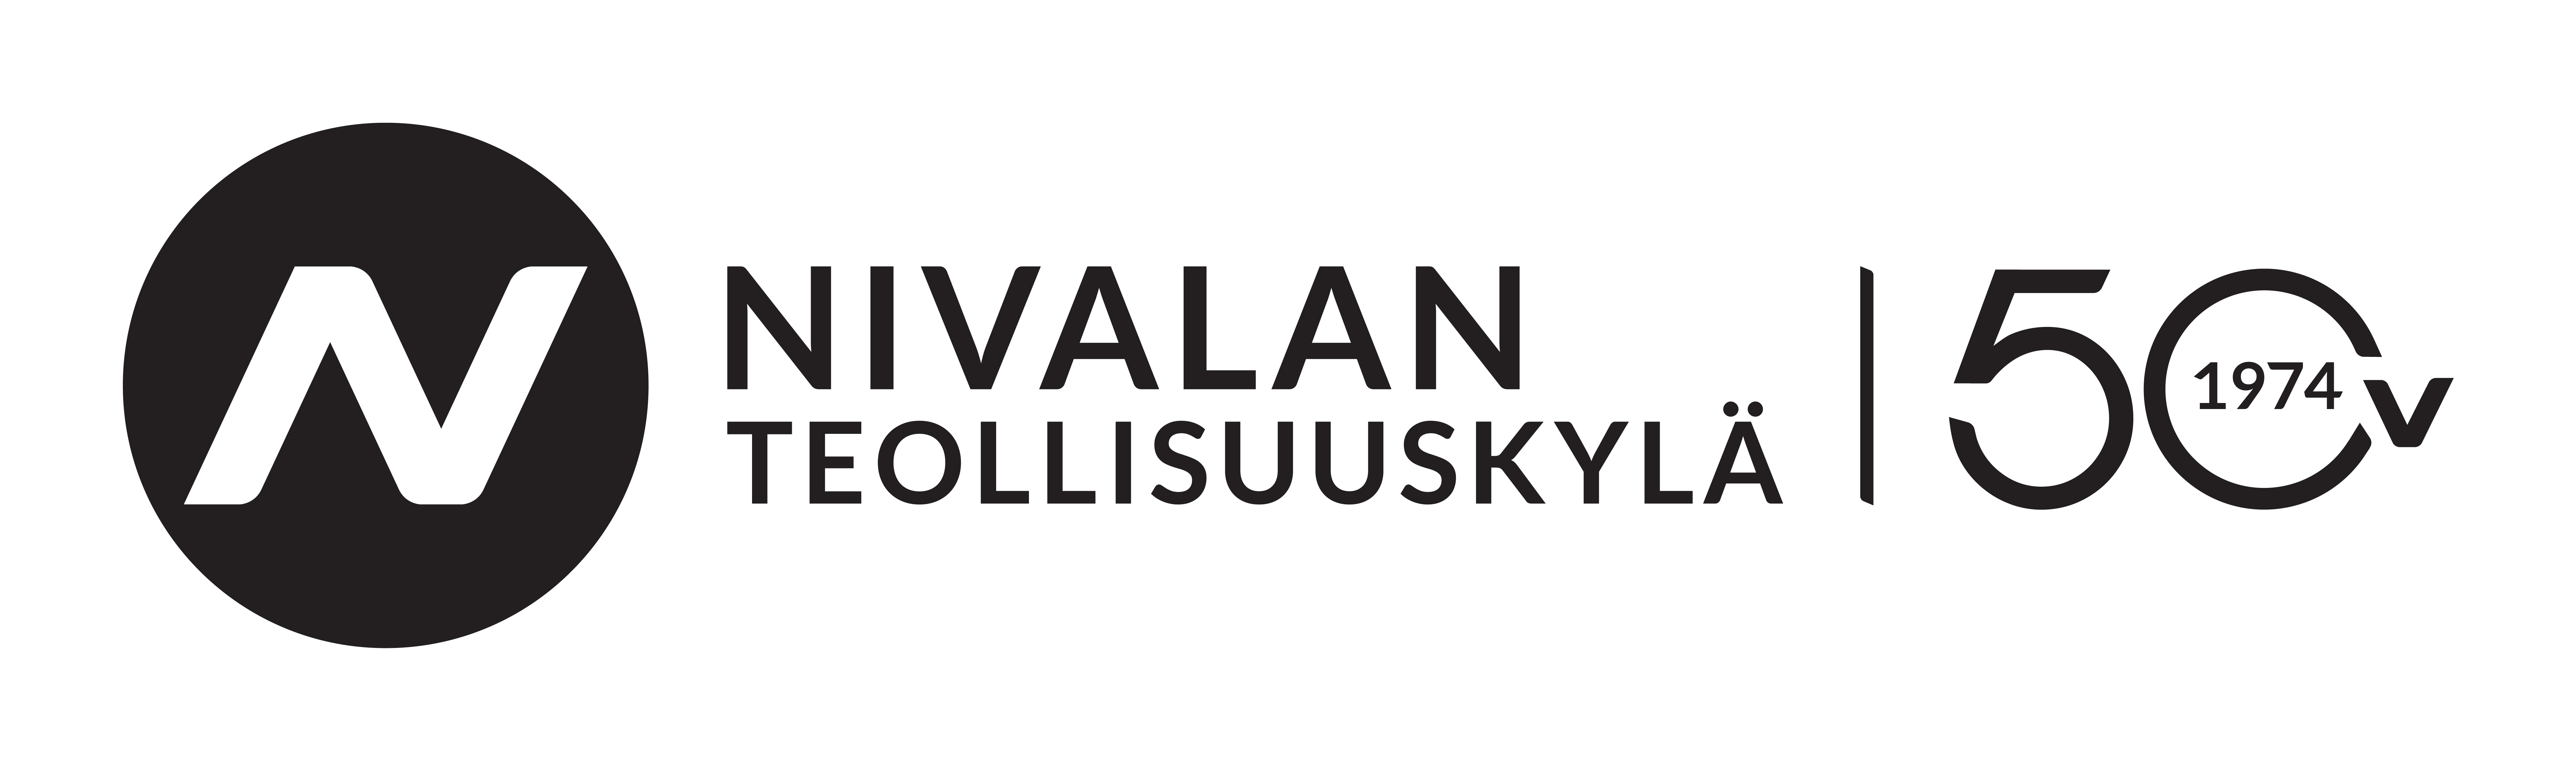 Nivalan_Teollisuuskyla_50v_logo_mvjpg